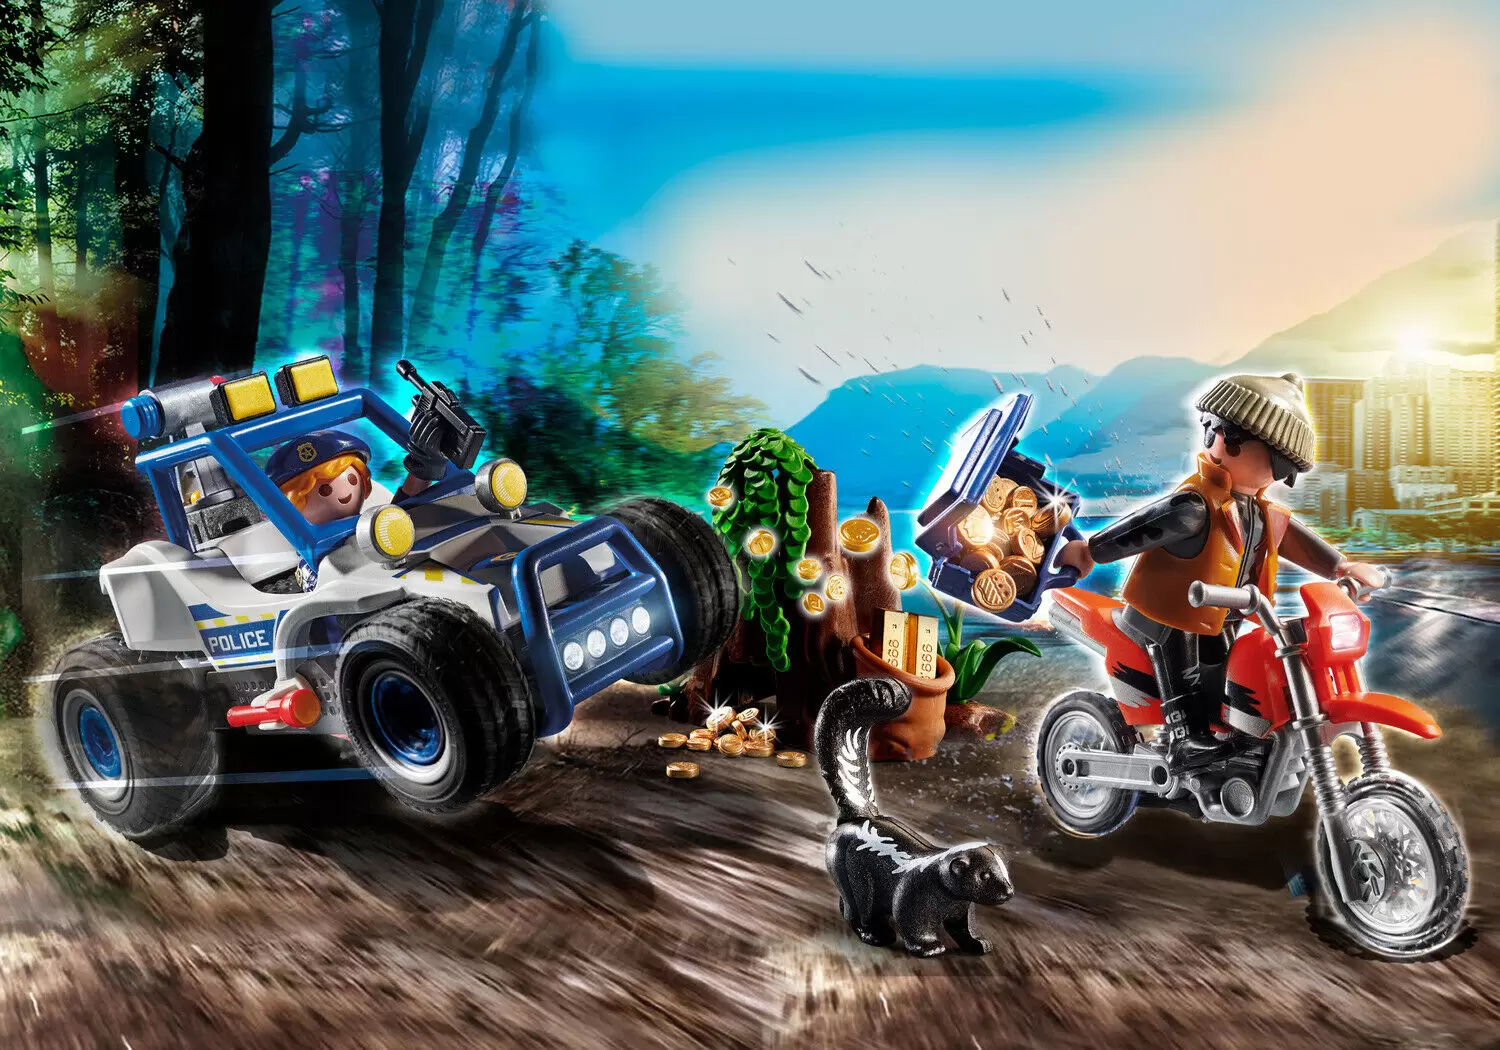 Playmobil Policier - Policier avec voiturette et voleur